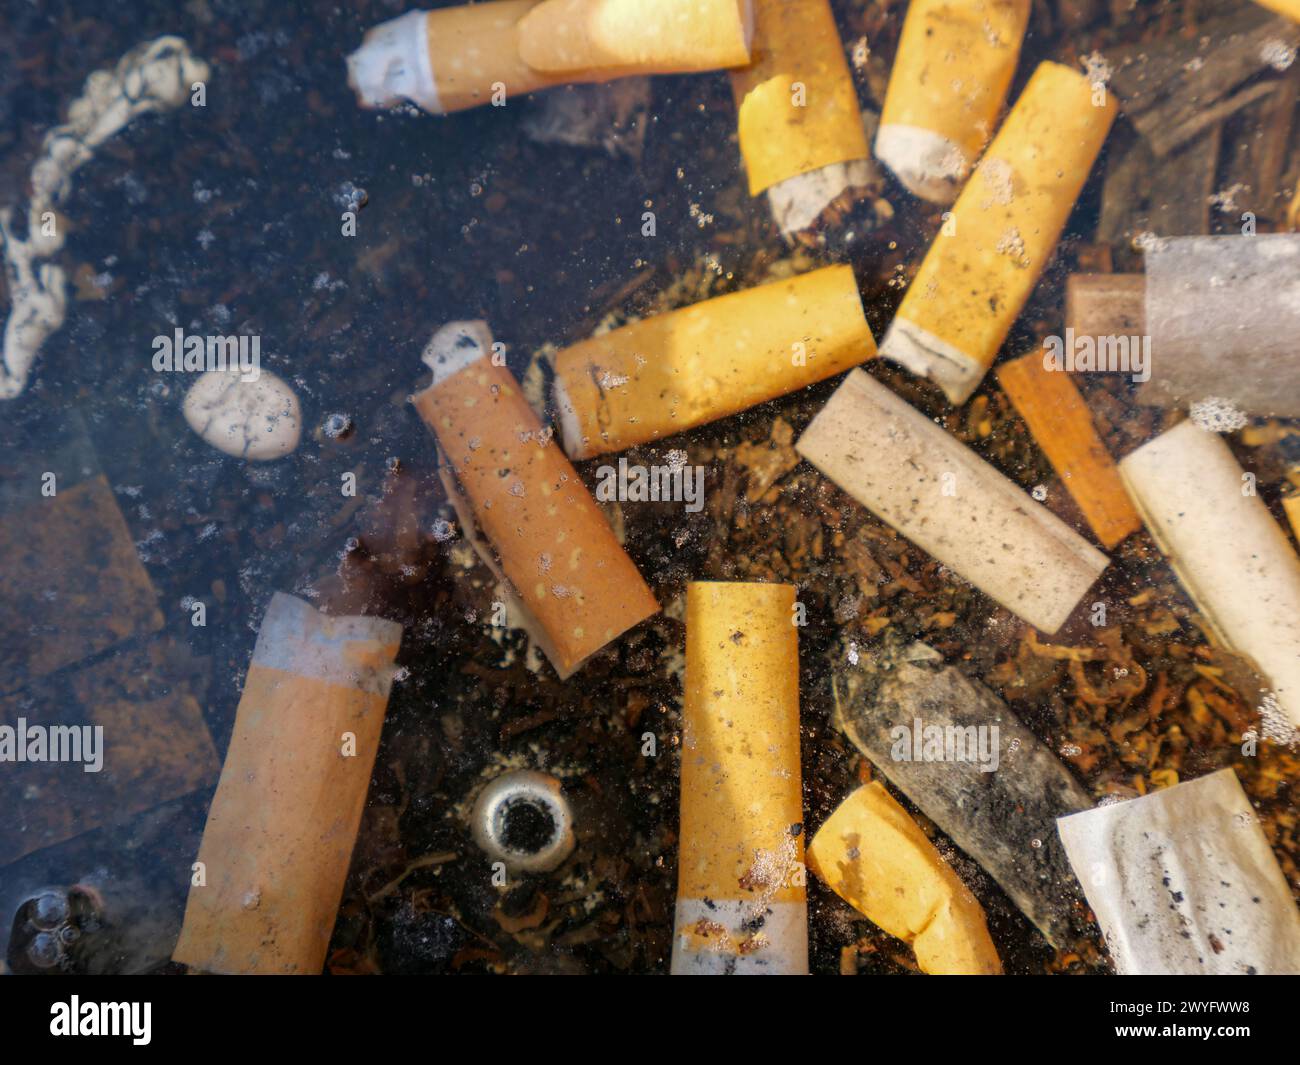 Mozziconi di sigaretta sul fondo del serbatoio dell'acqua. Stili di vita lettieri e malsani Foto Stock